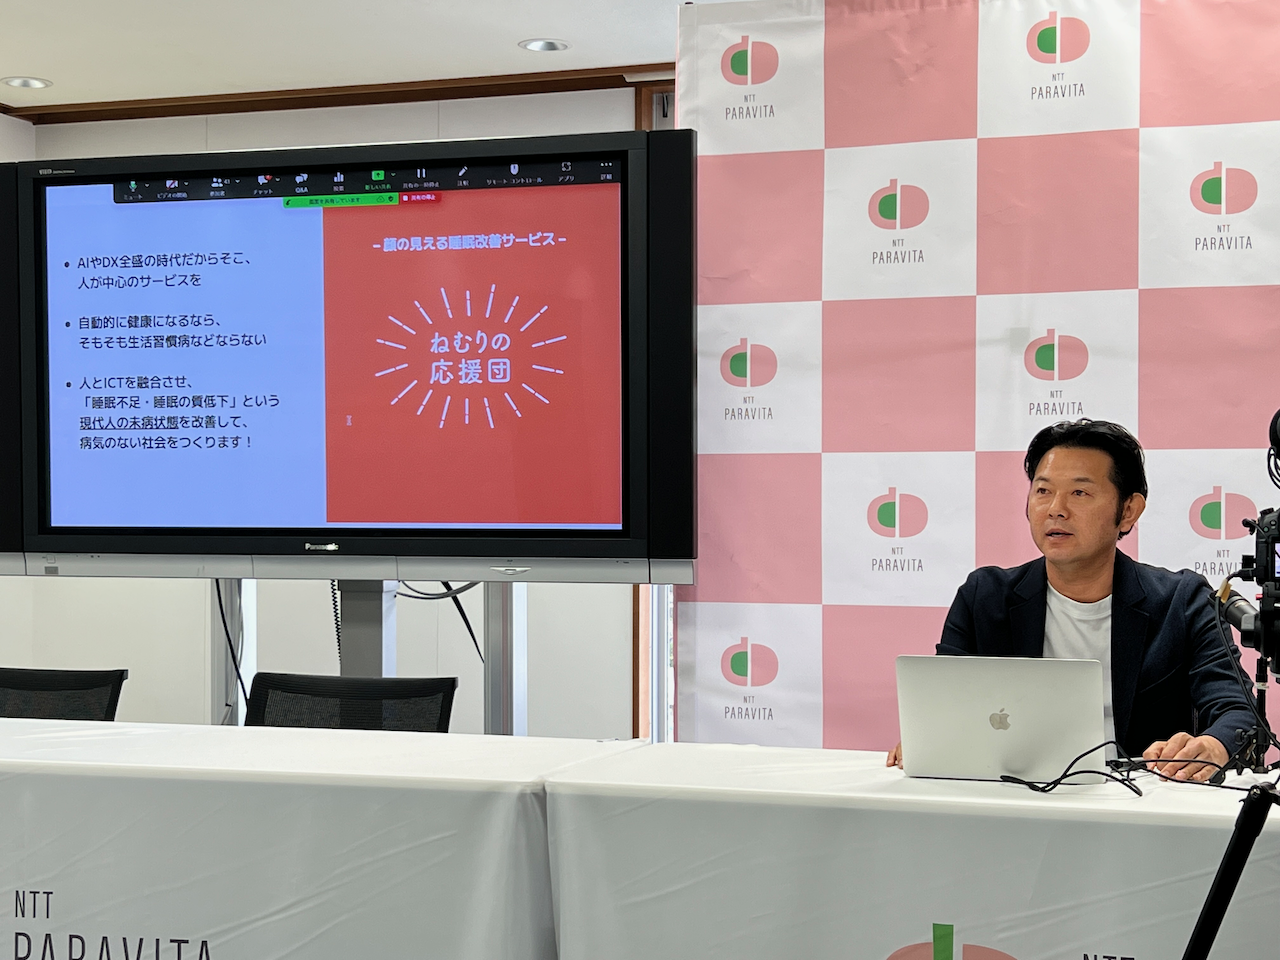 サービスを説明するマーケティング部の猪原祥博氏は自身も睡眠改善インストラクターの資格を持つ